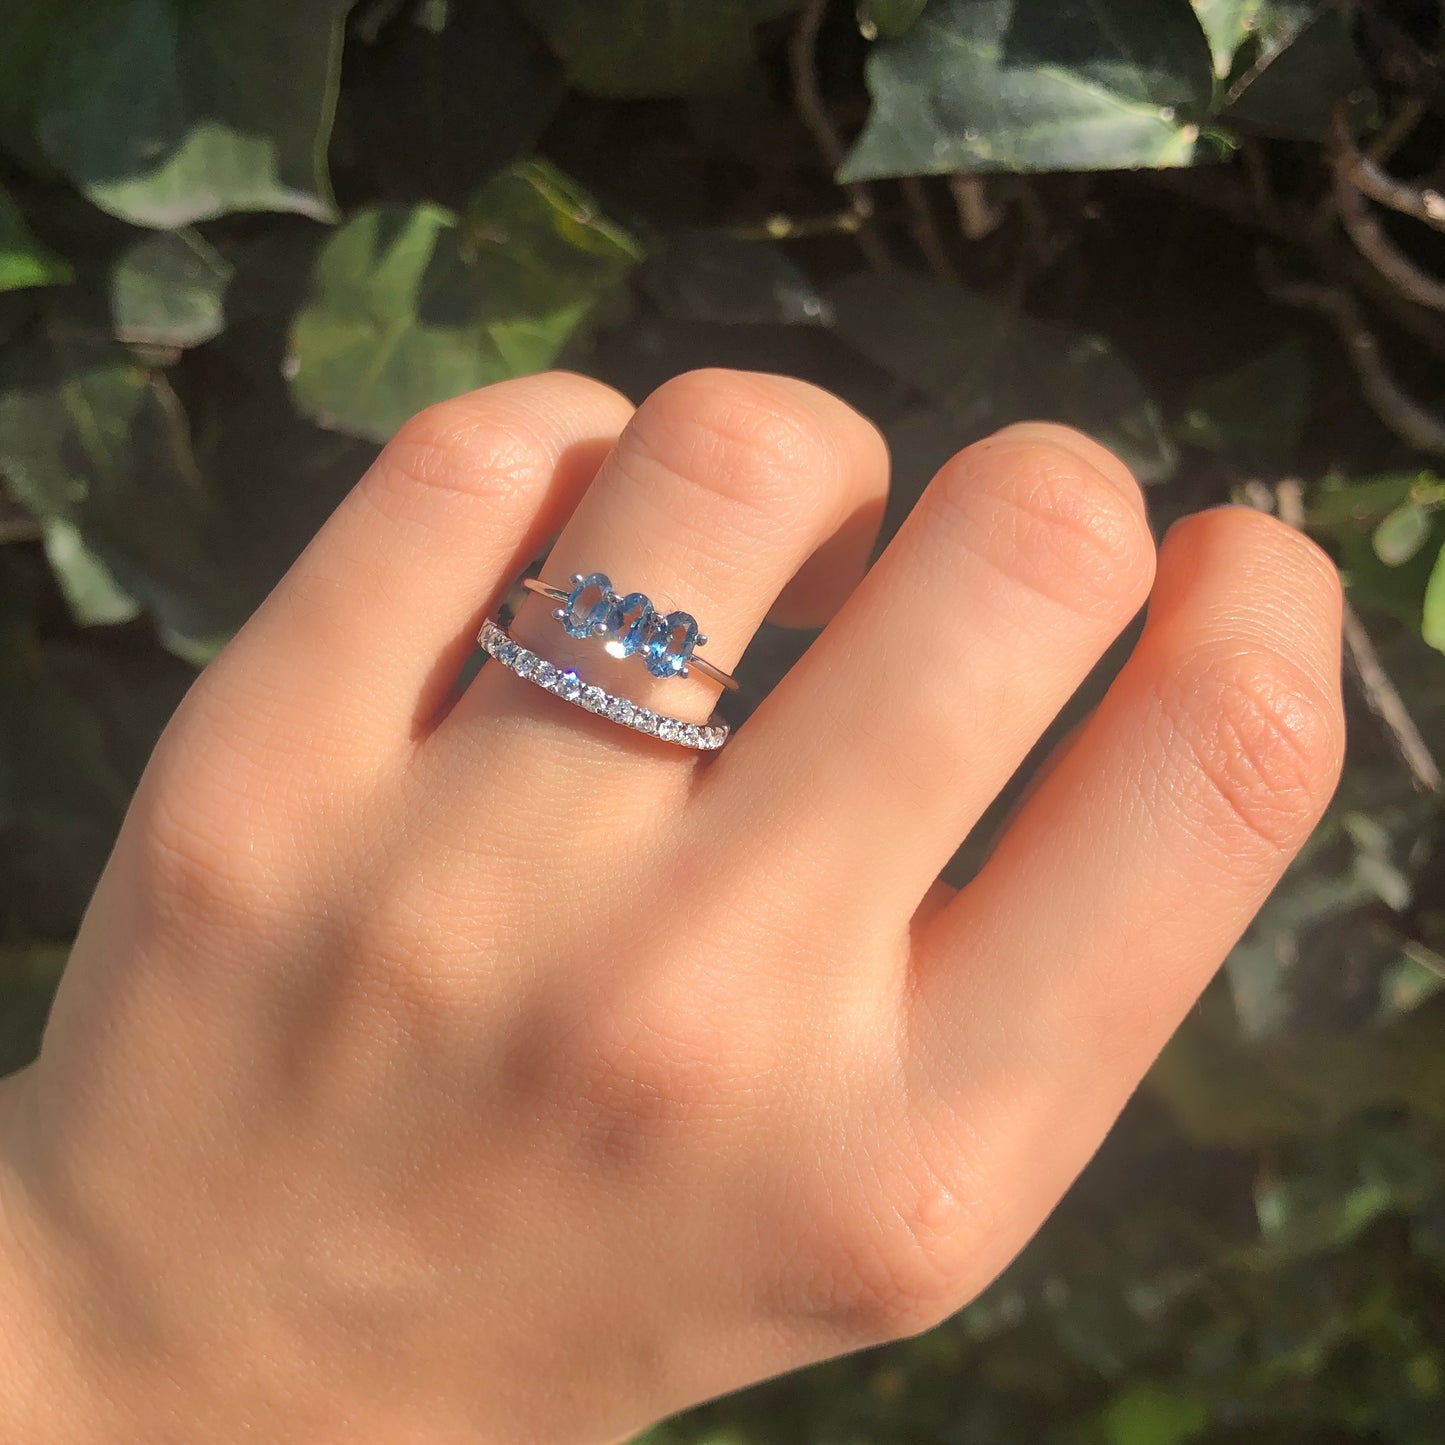 Soluna Ring with Intense Blue Aquamarine